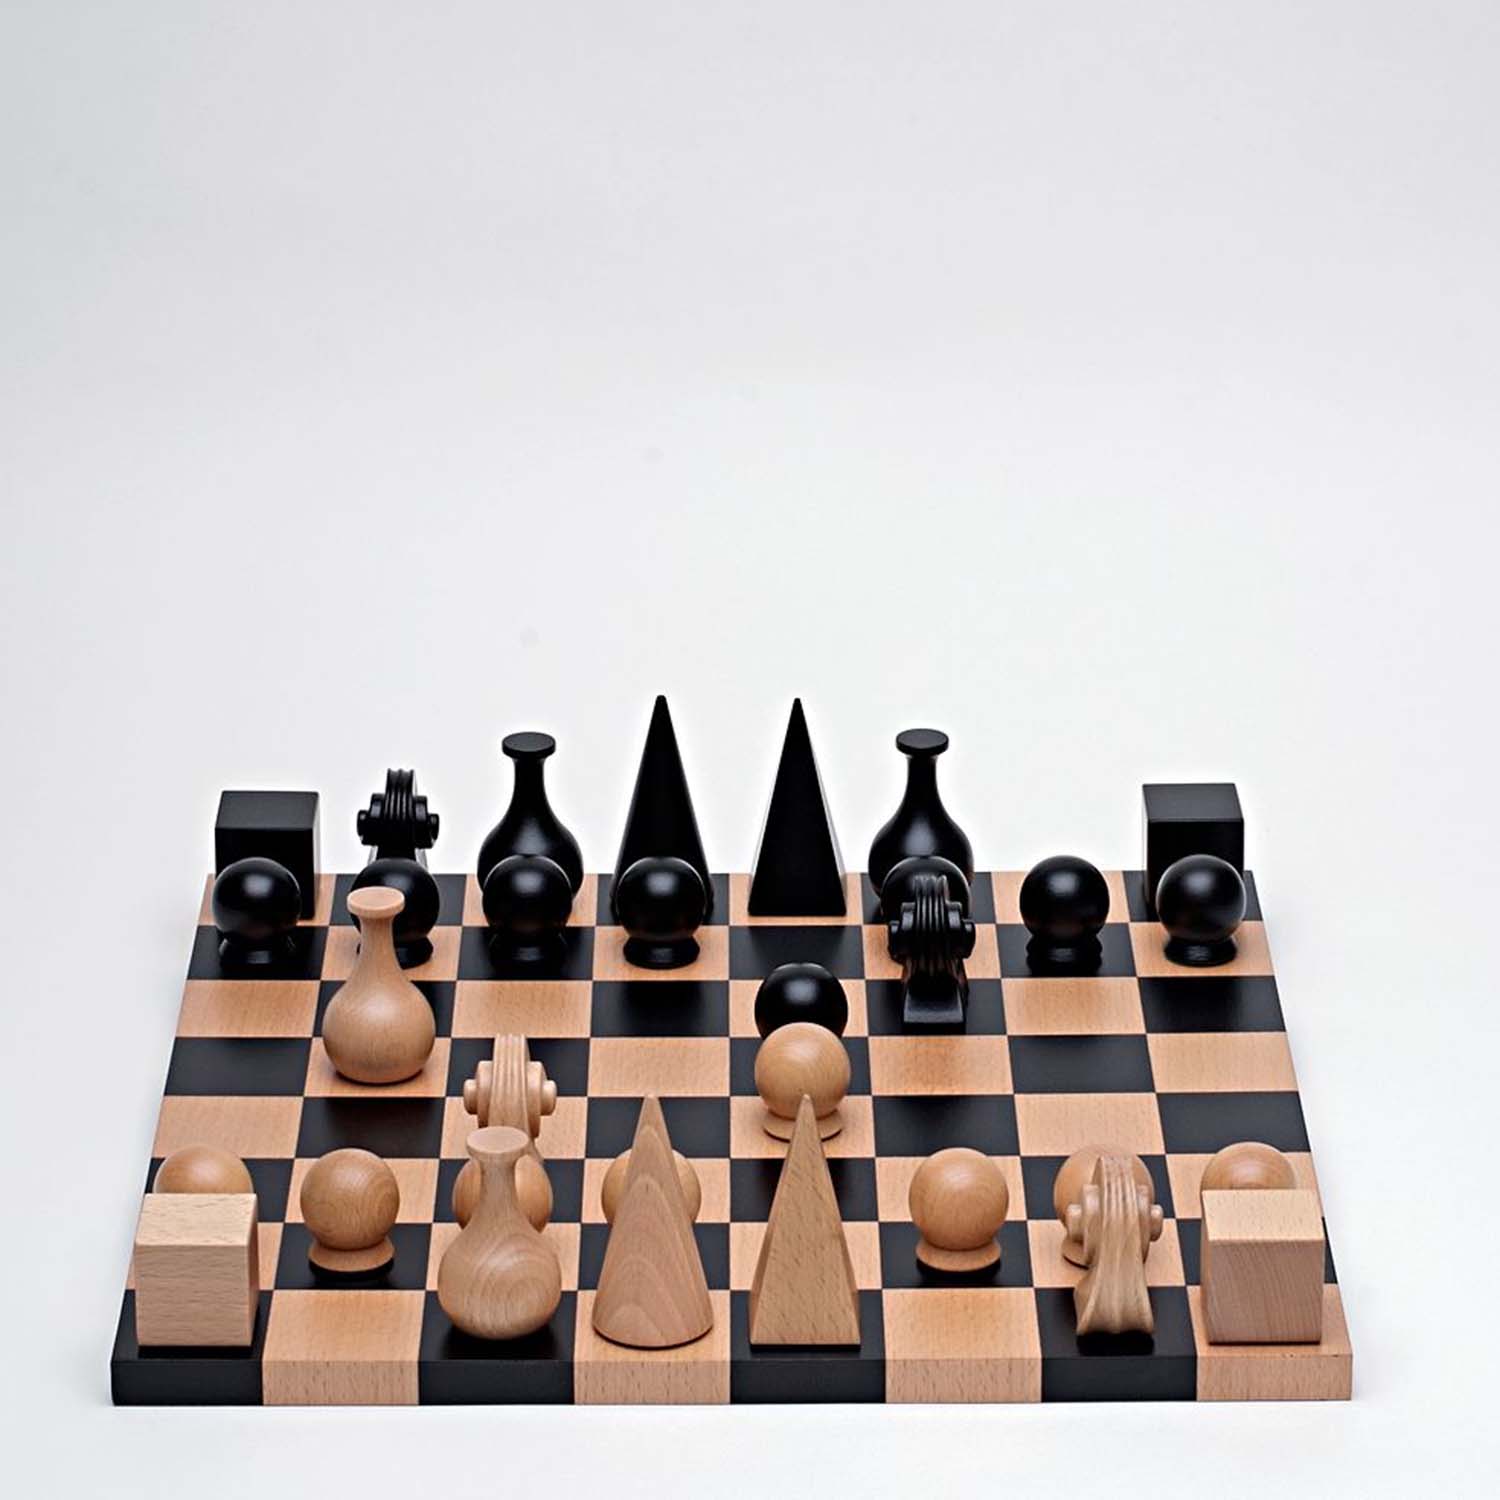 मैन रे द्वारा निर्धारित शतरंज के टुकड़े की तस्वीर